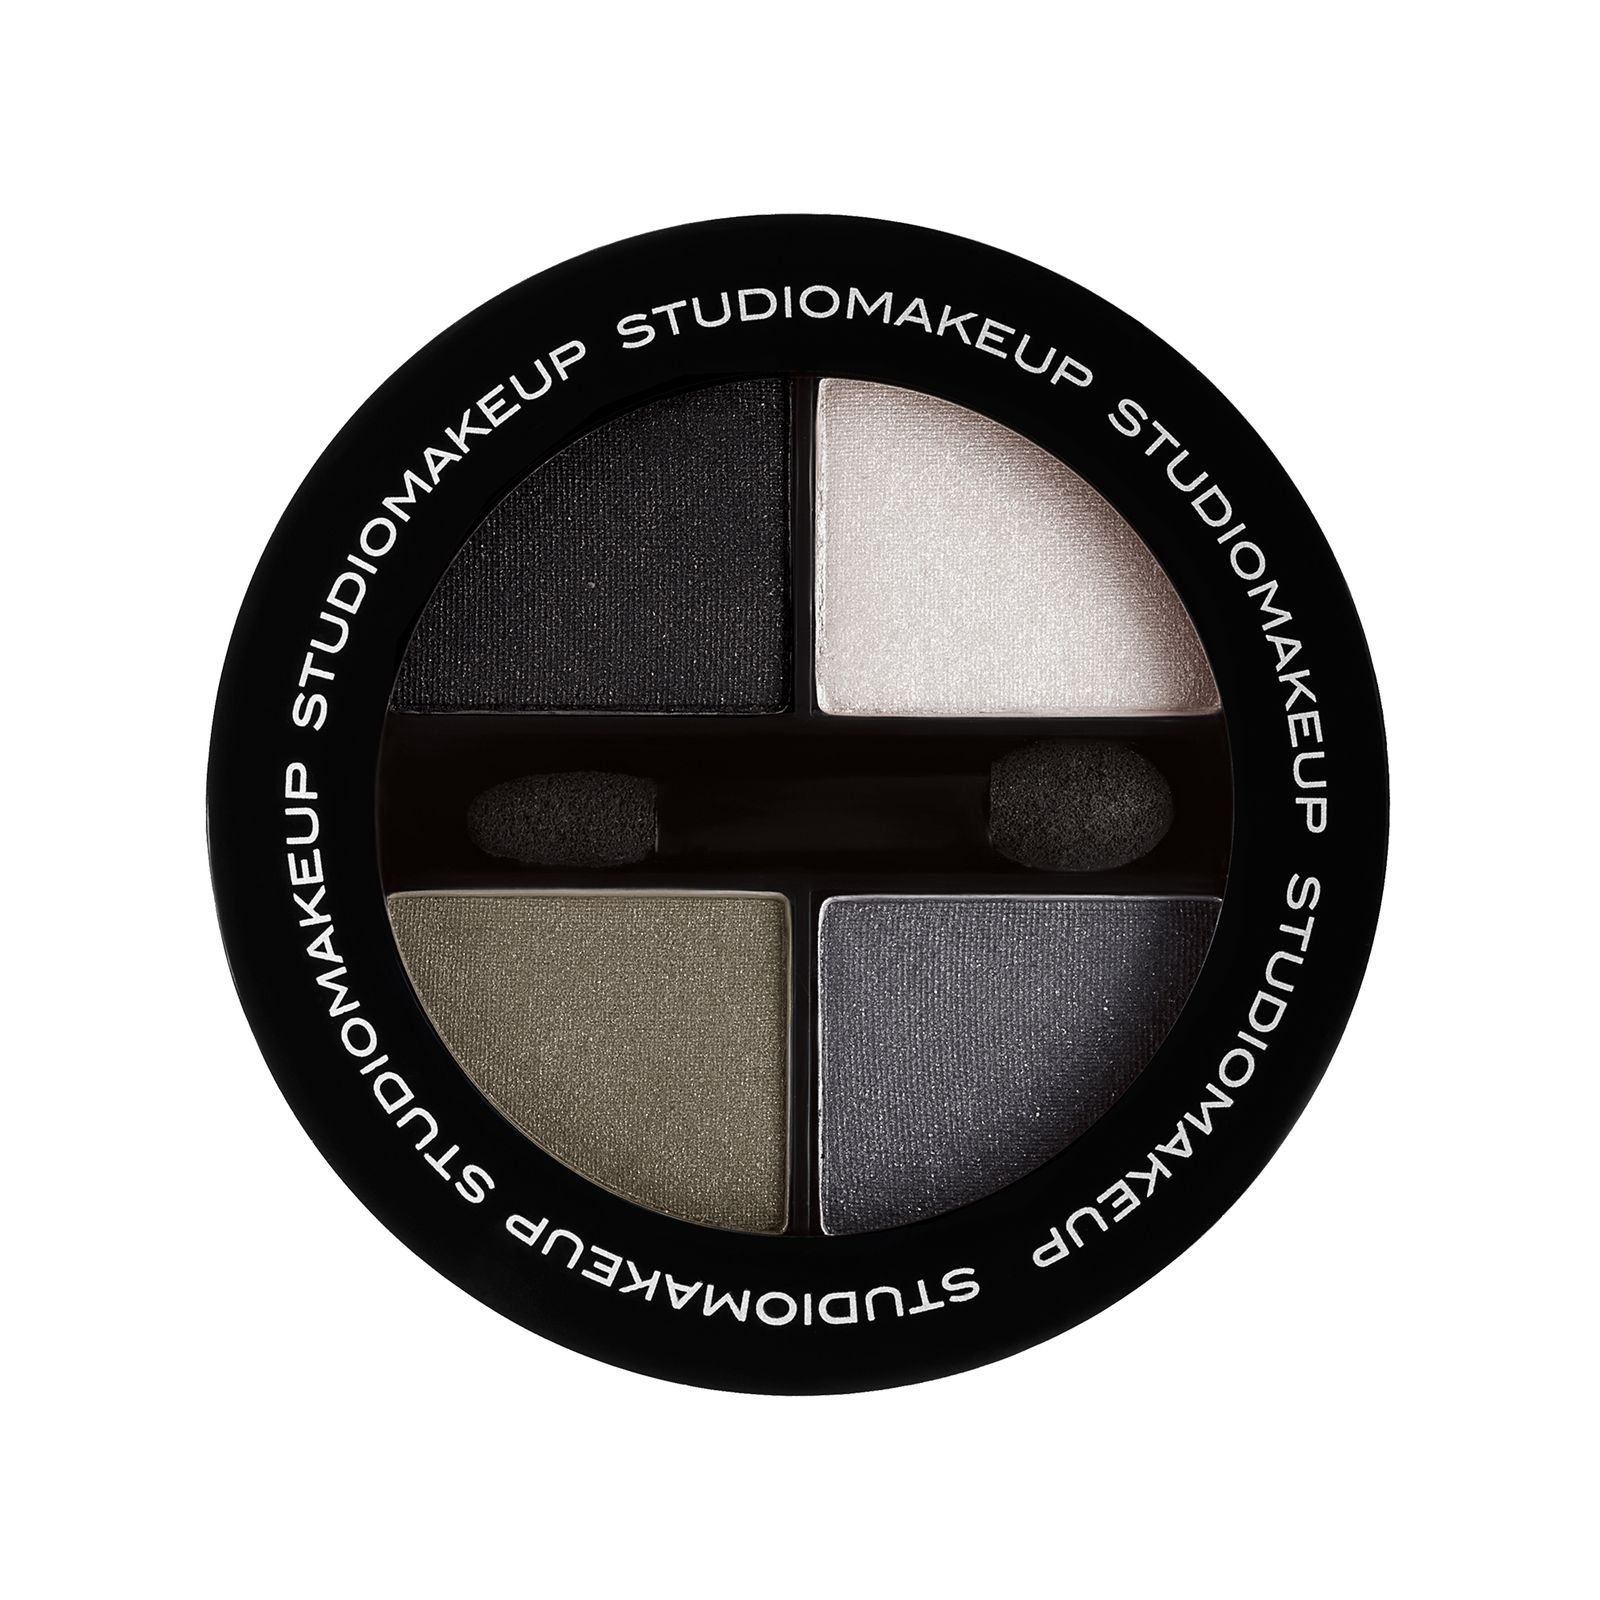 پالت سایه چشم استودیو میکاپ مدل Soft Blend شماره 06 -  - 1